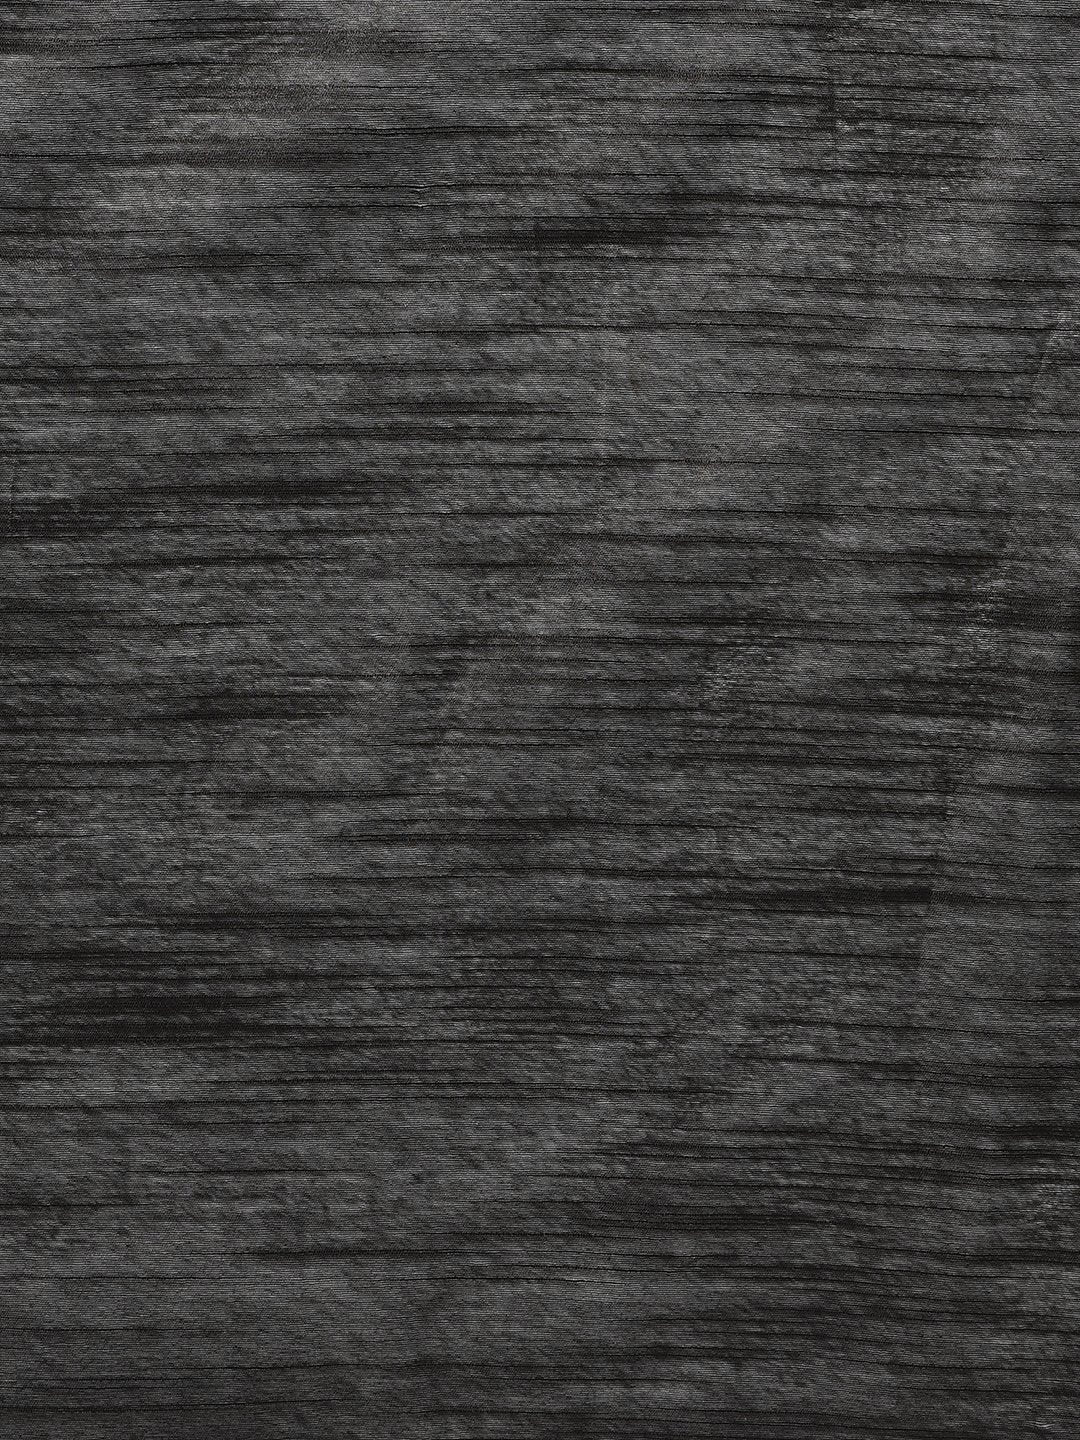 Handloom Saree In Black Color